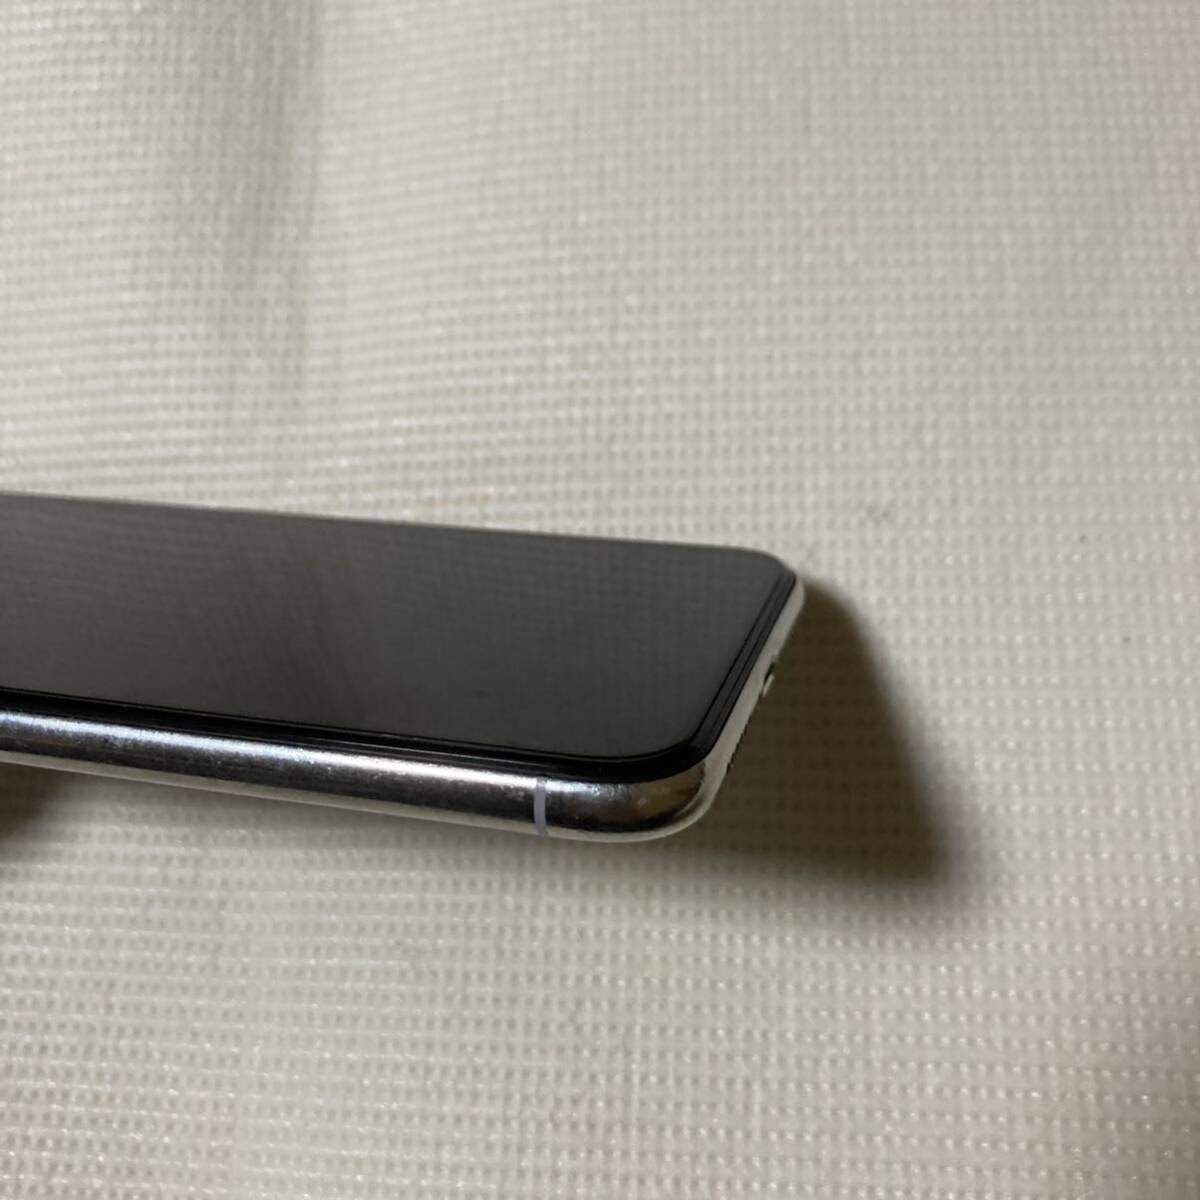 送料無料 SIMフリー iPhoneX 256GB シルバー バッテリー最大容量100% SIMロック解除済 中古品_画像4